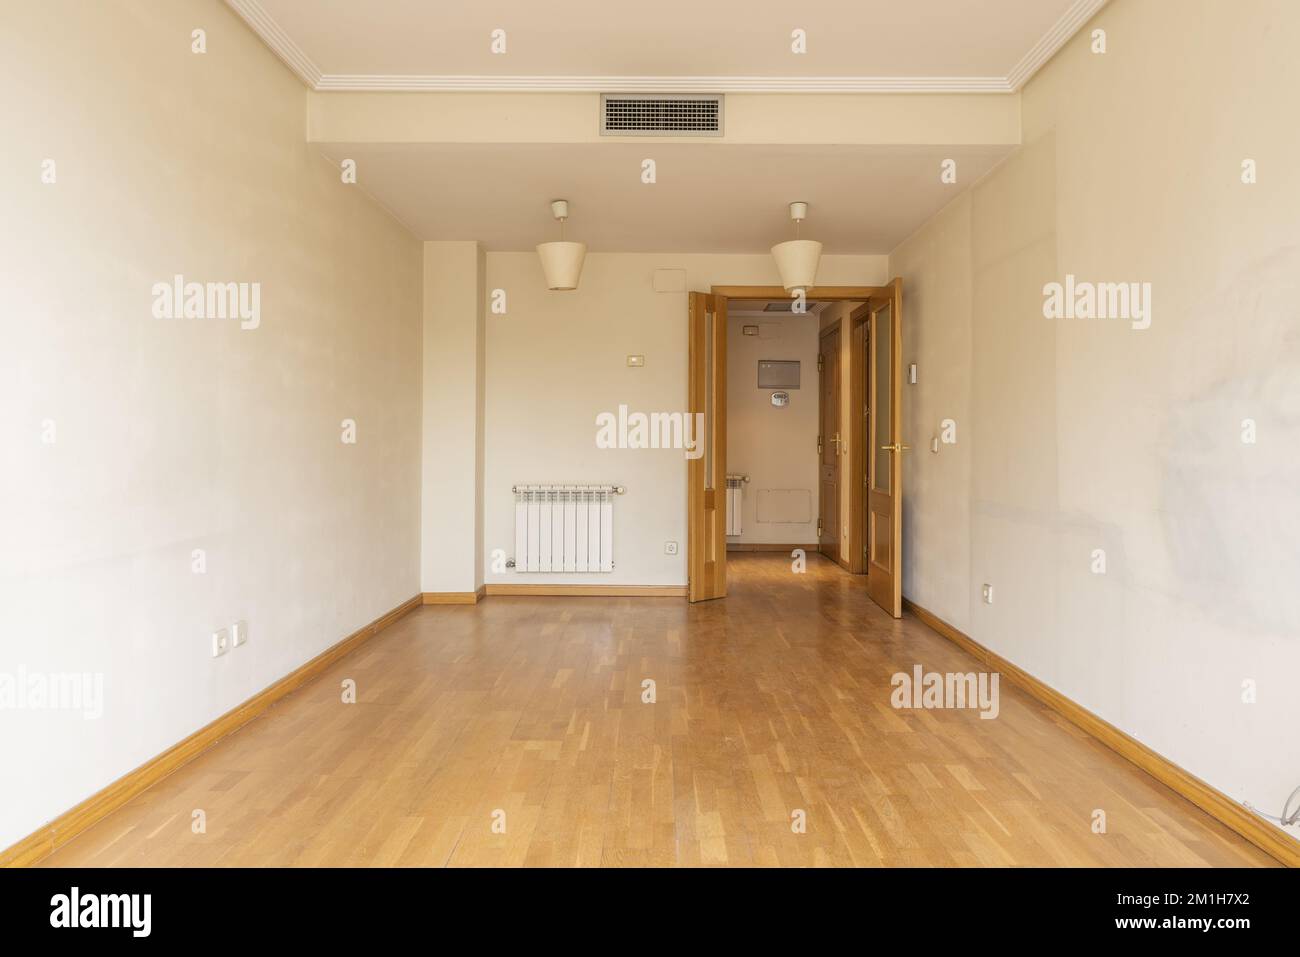 Une chambre vide avec deux portes en bois, un radiateur en aluminium, la climatisation à travers des conduits cachés dans le faux plafond et parquet en chêne. Banque D'Images